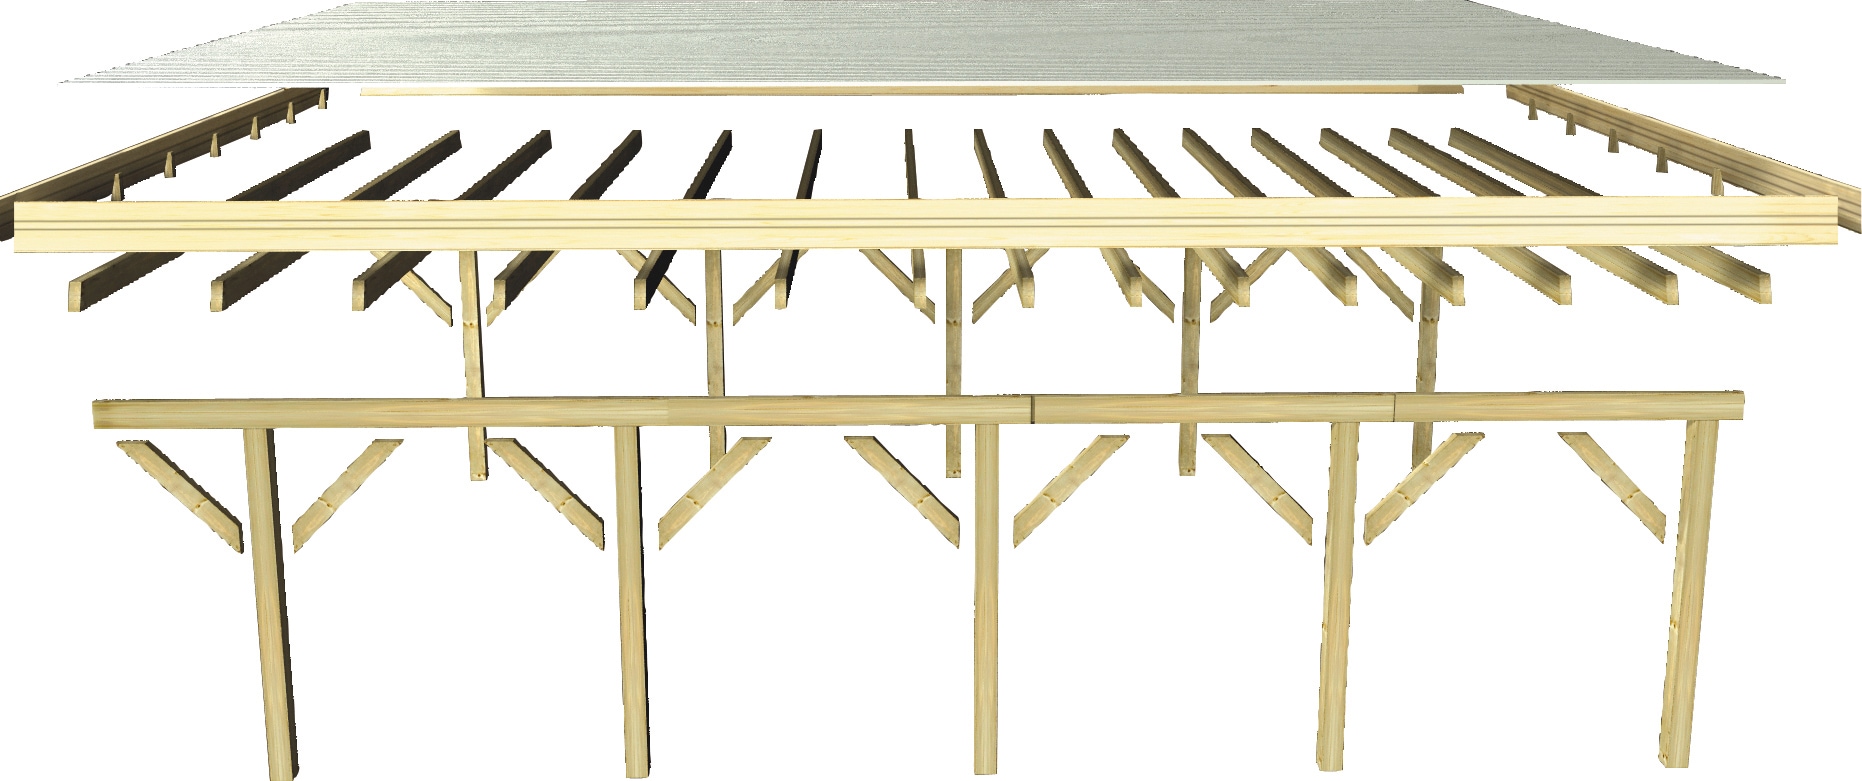 Karibu Einzelcarport »Classic 2«, Holz, 250 cm, braun, mit Rückwand und 3 Seitenwänden